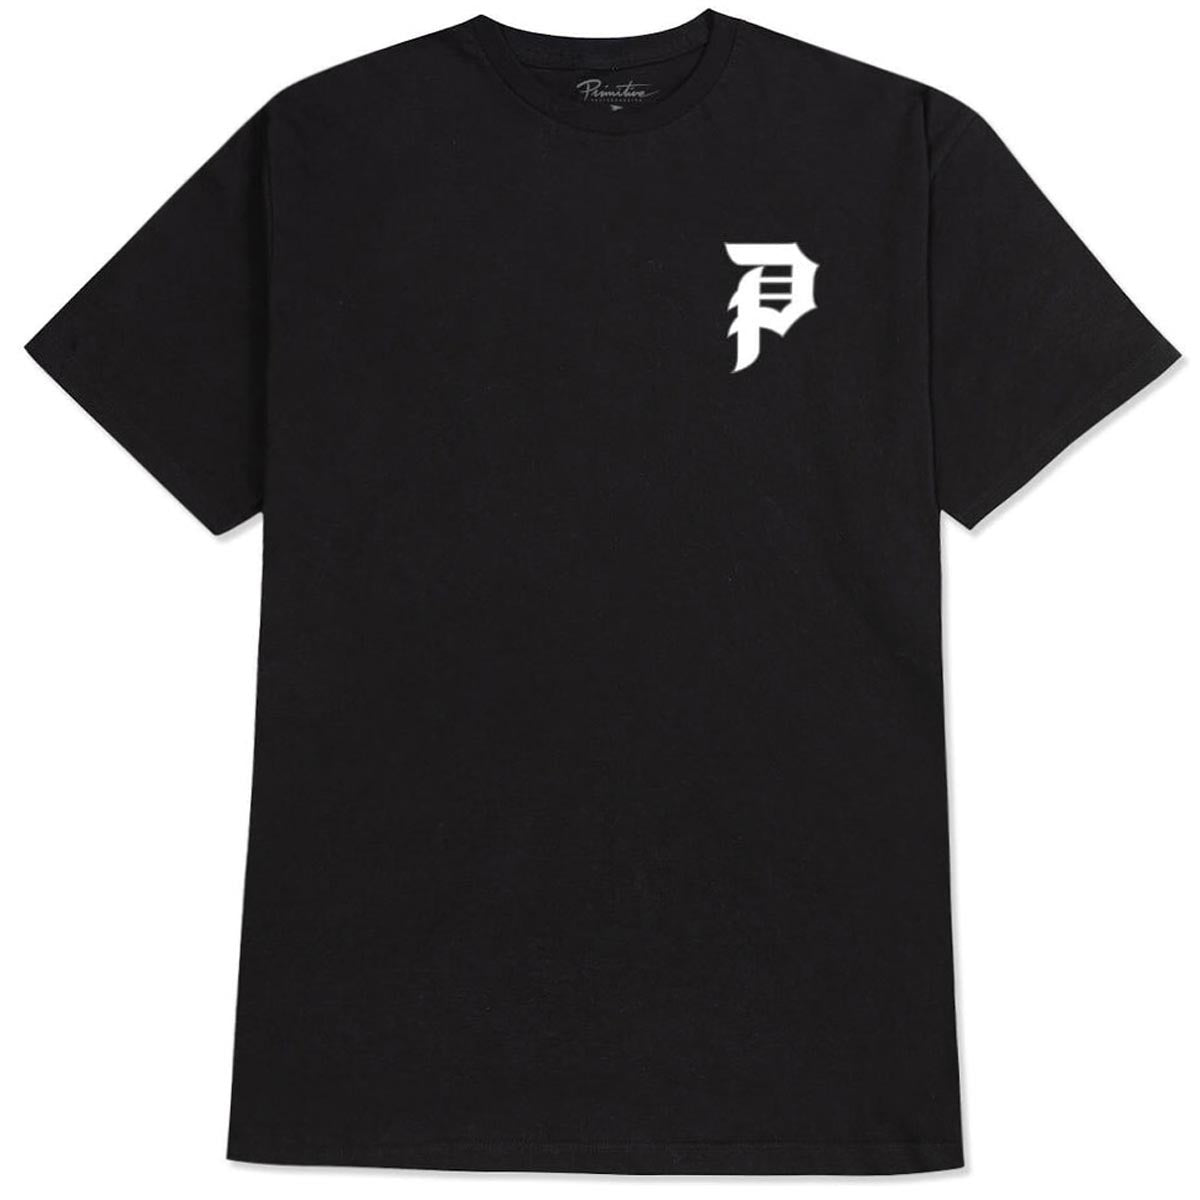 Primitive Tangle T-Shirt - Black image 2